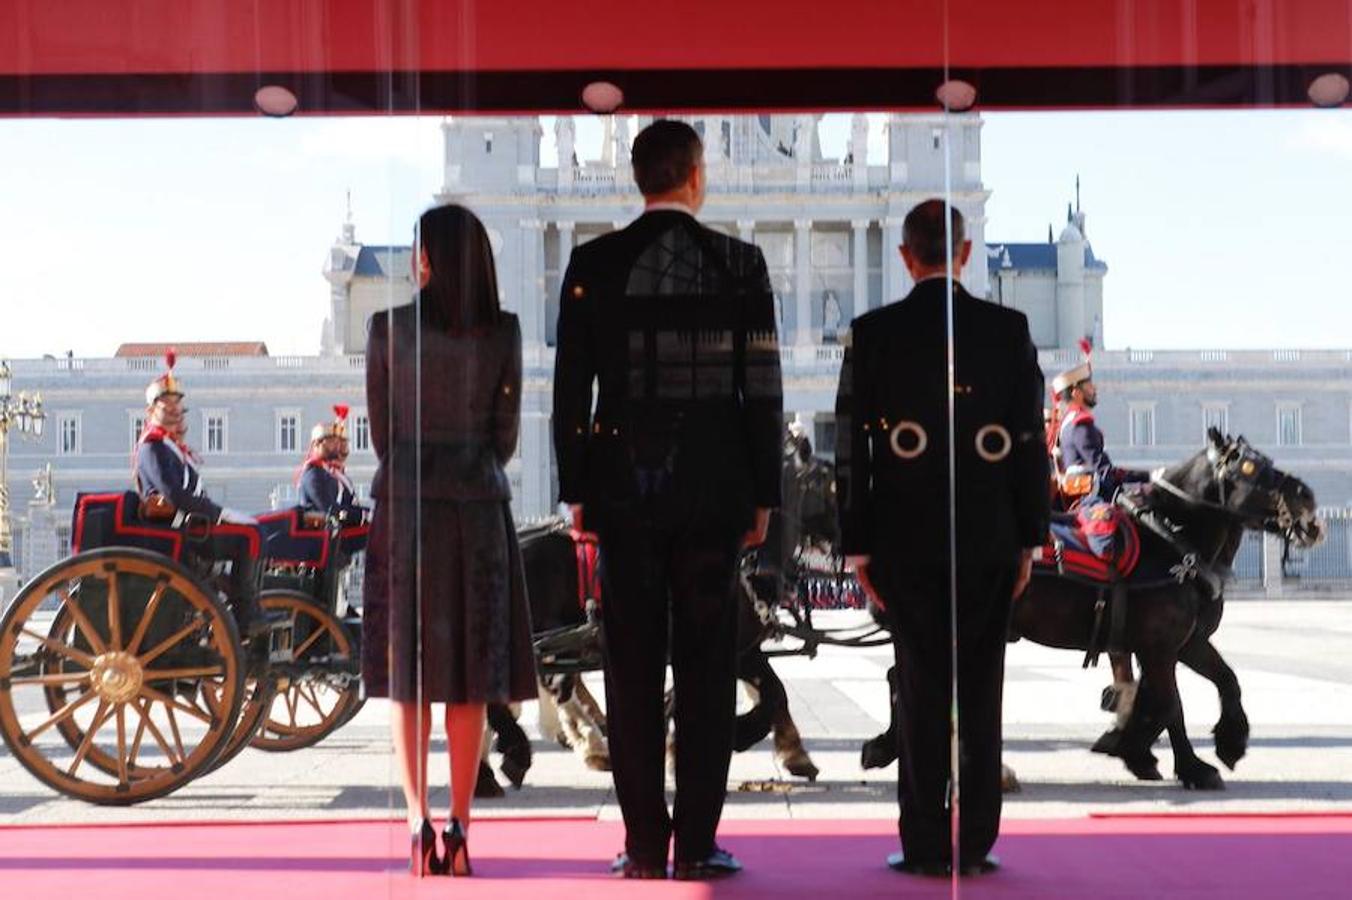 Los Reyes reciben al presidente del Portugal en el Palacio Real